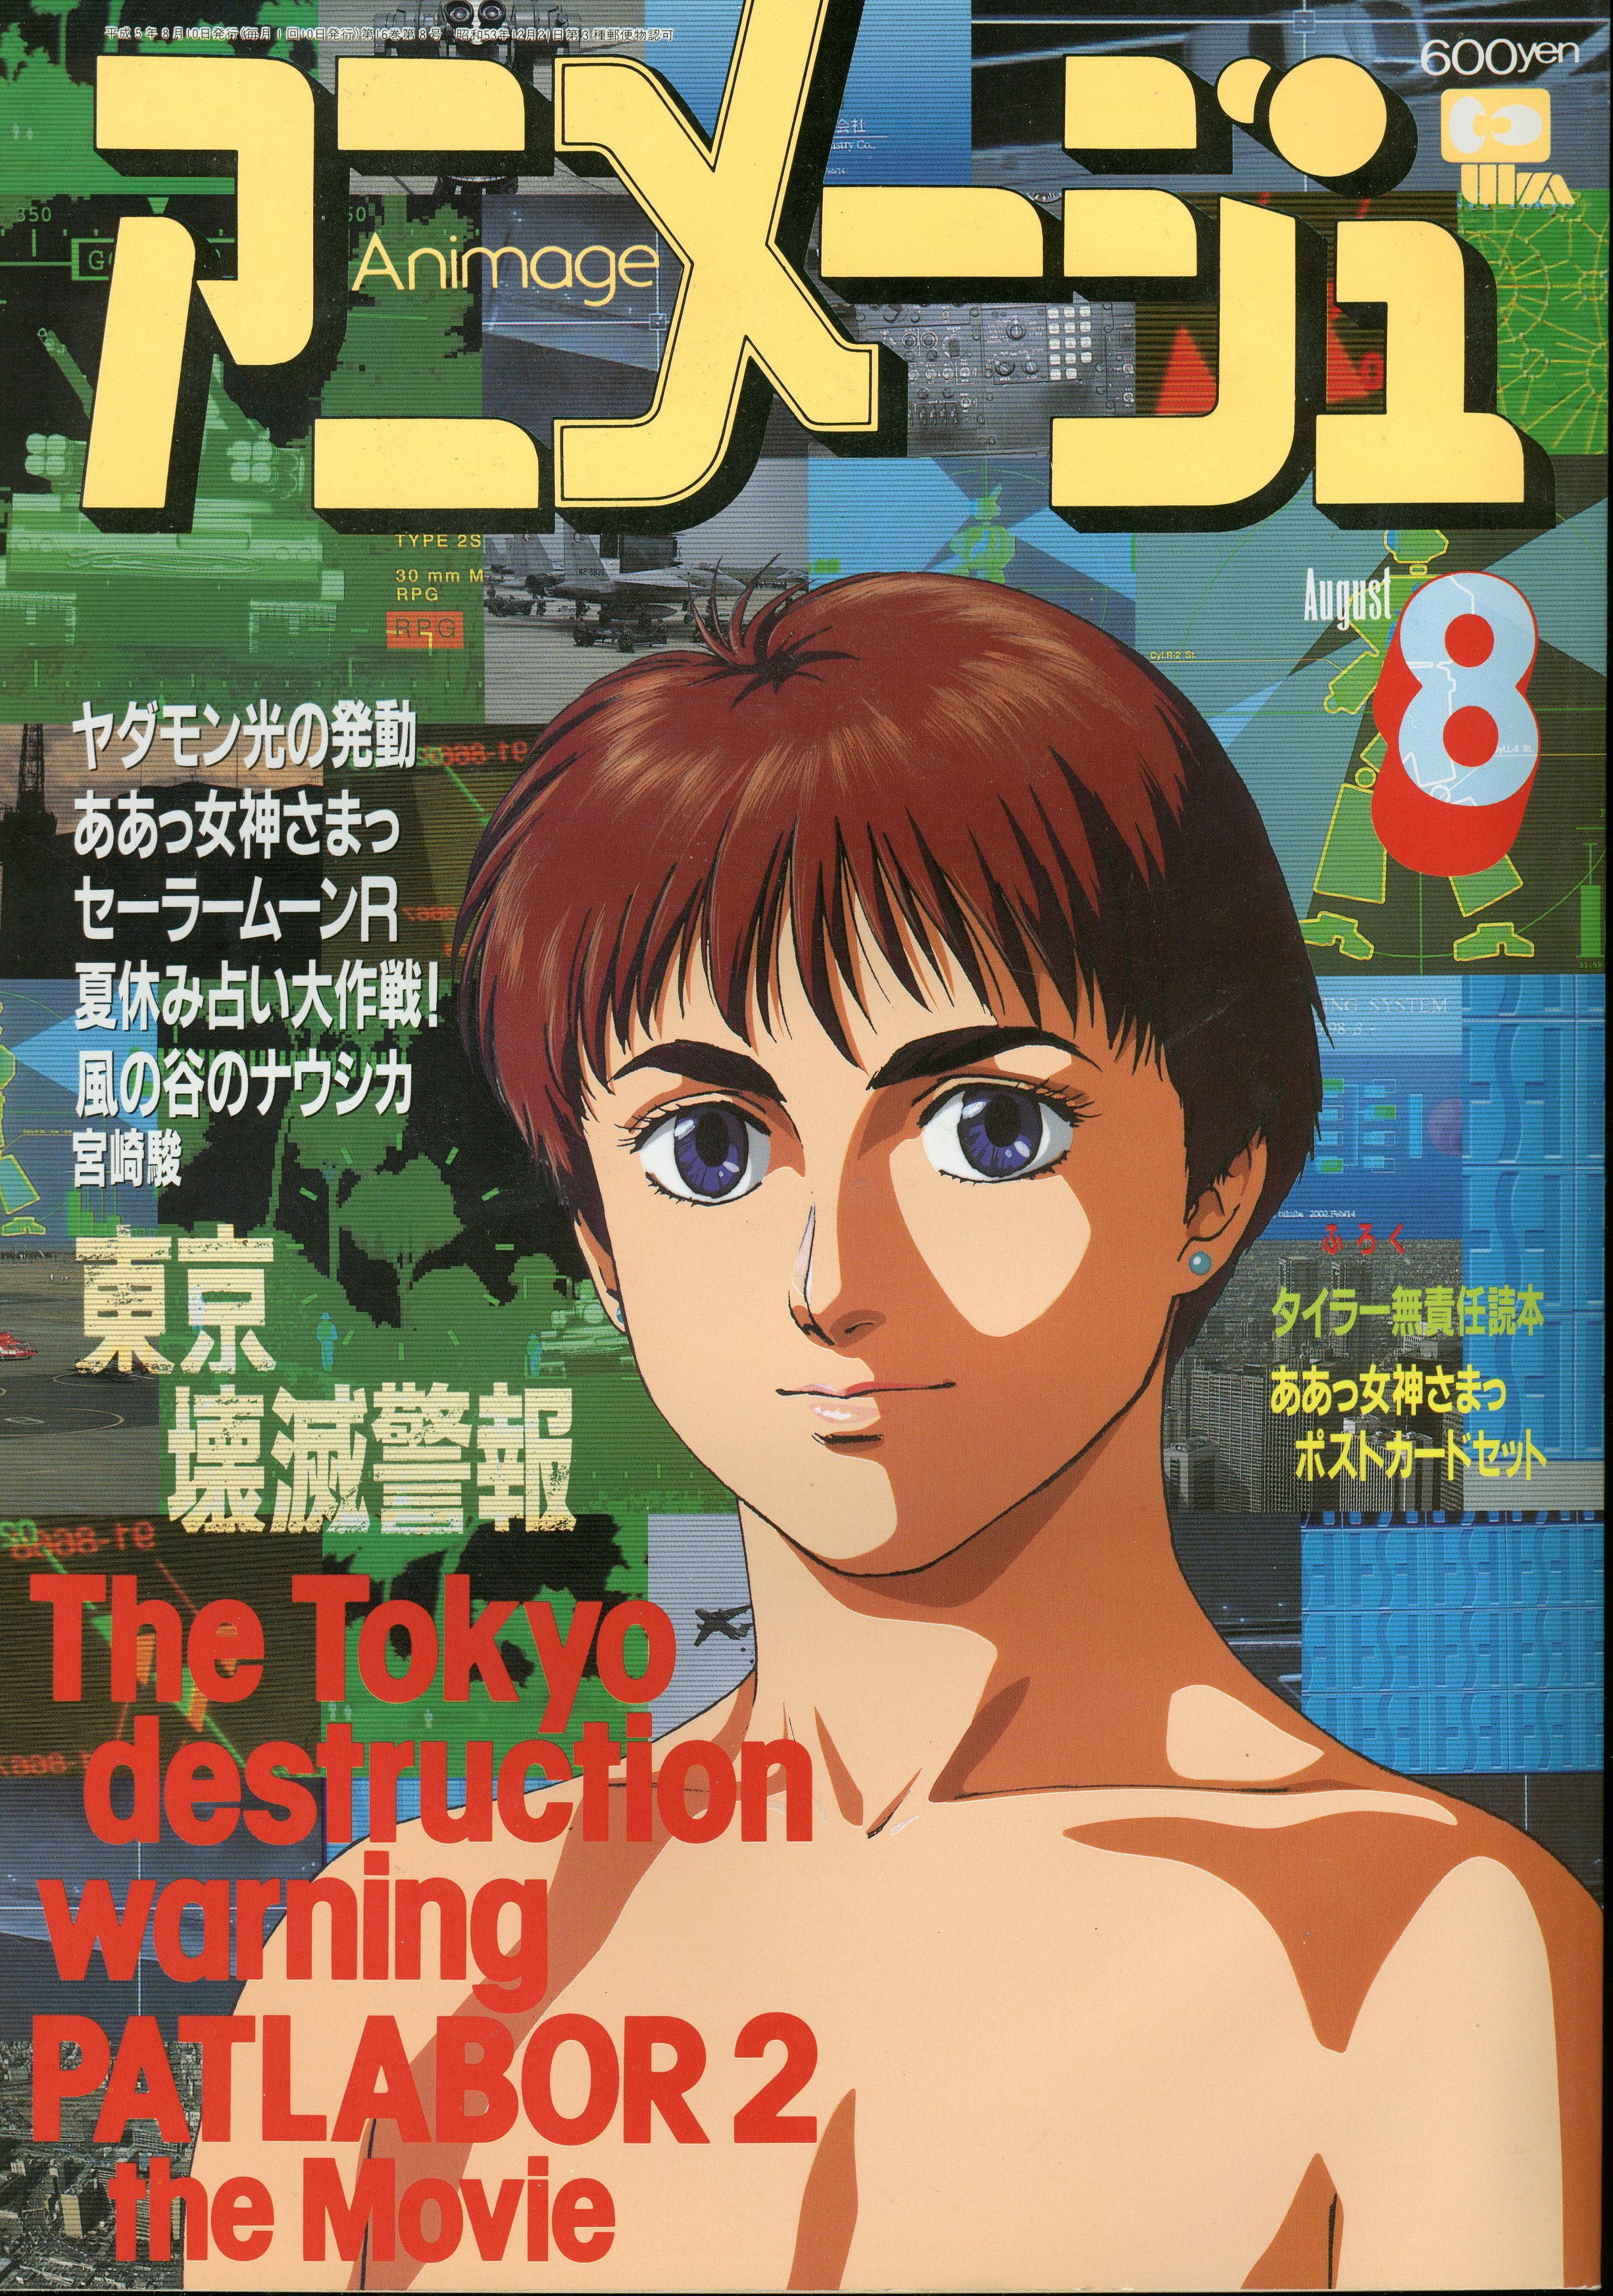 徳間書店 1993年(平成5年)のアニメ雑誌 付録つき アニメージュ1993年